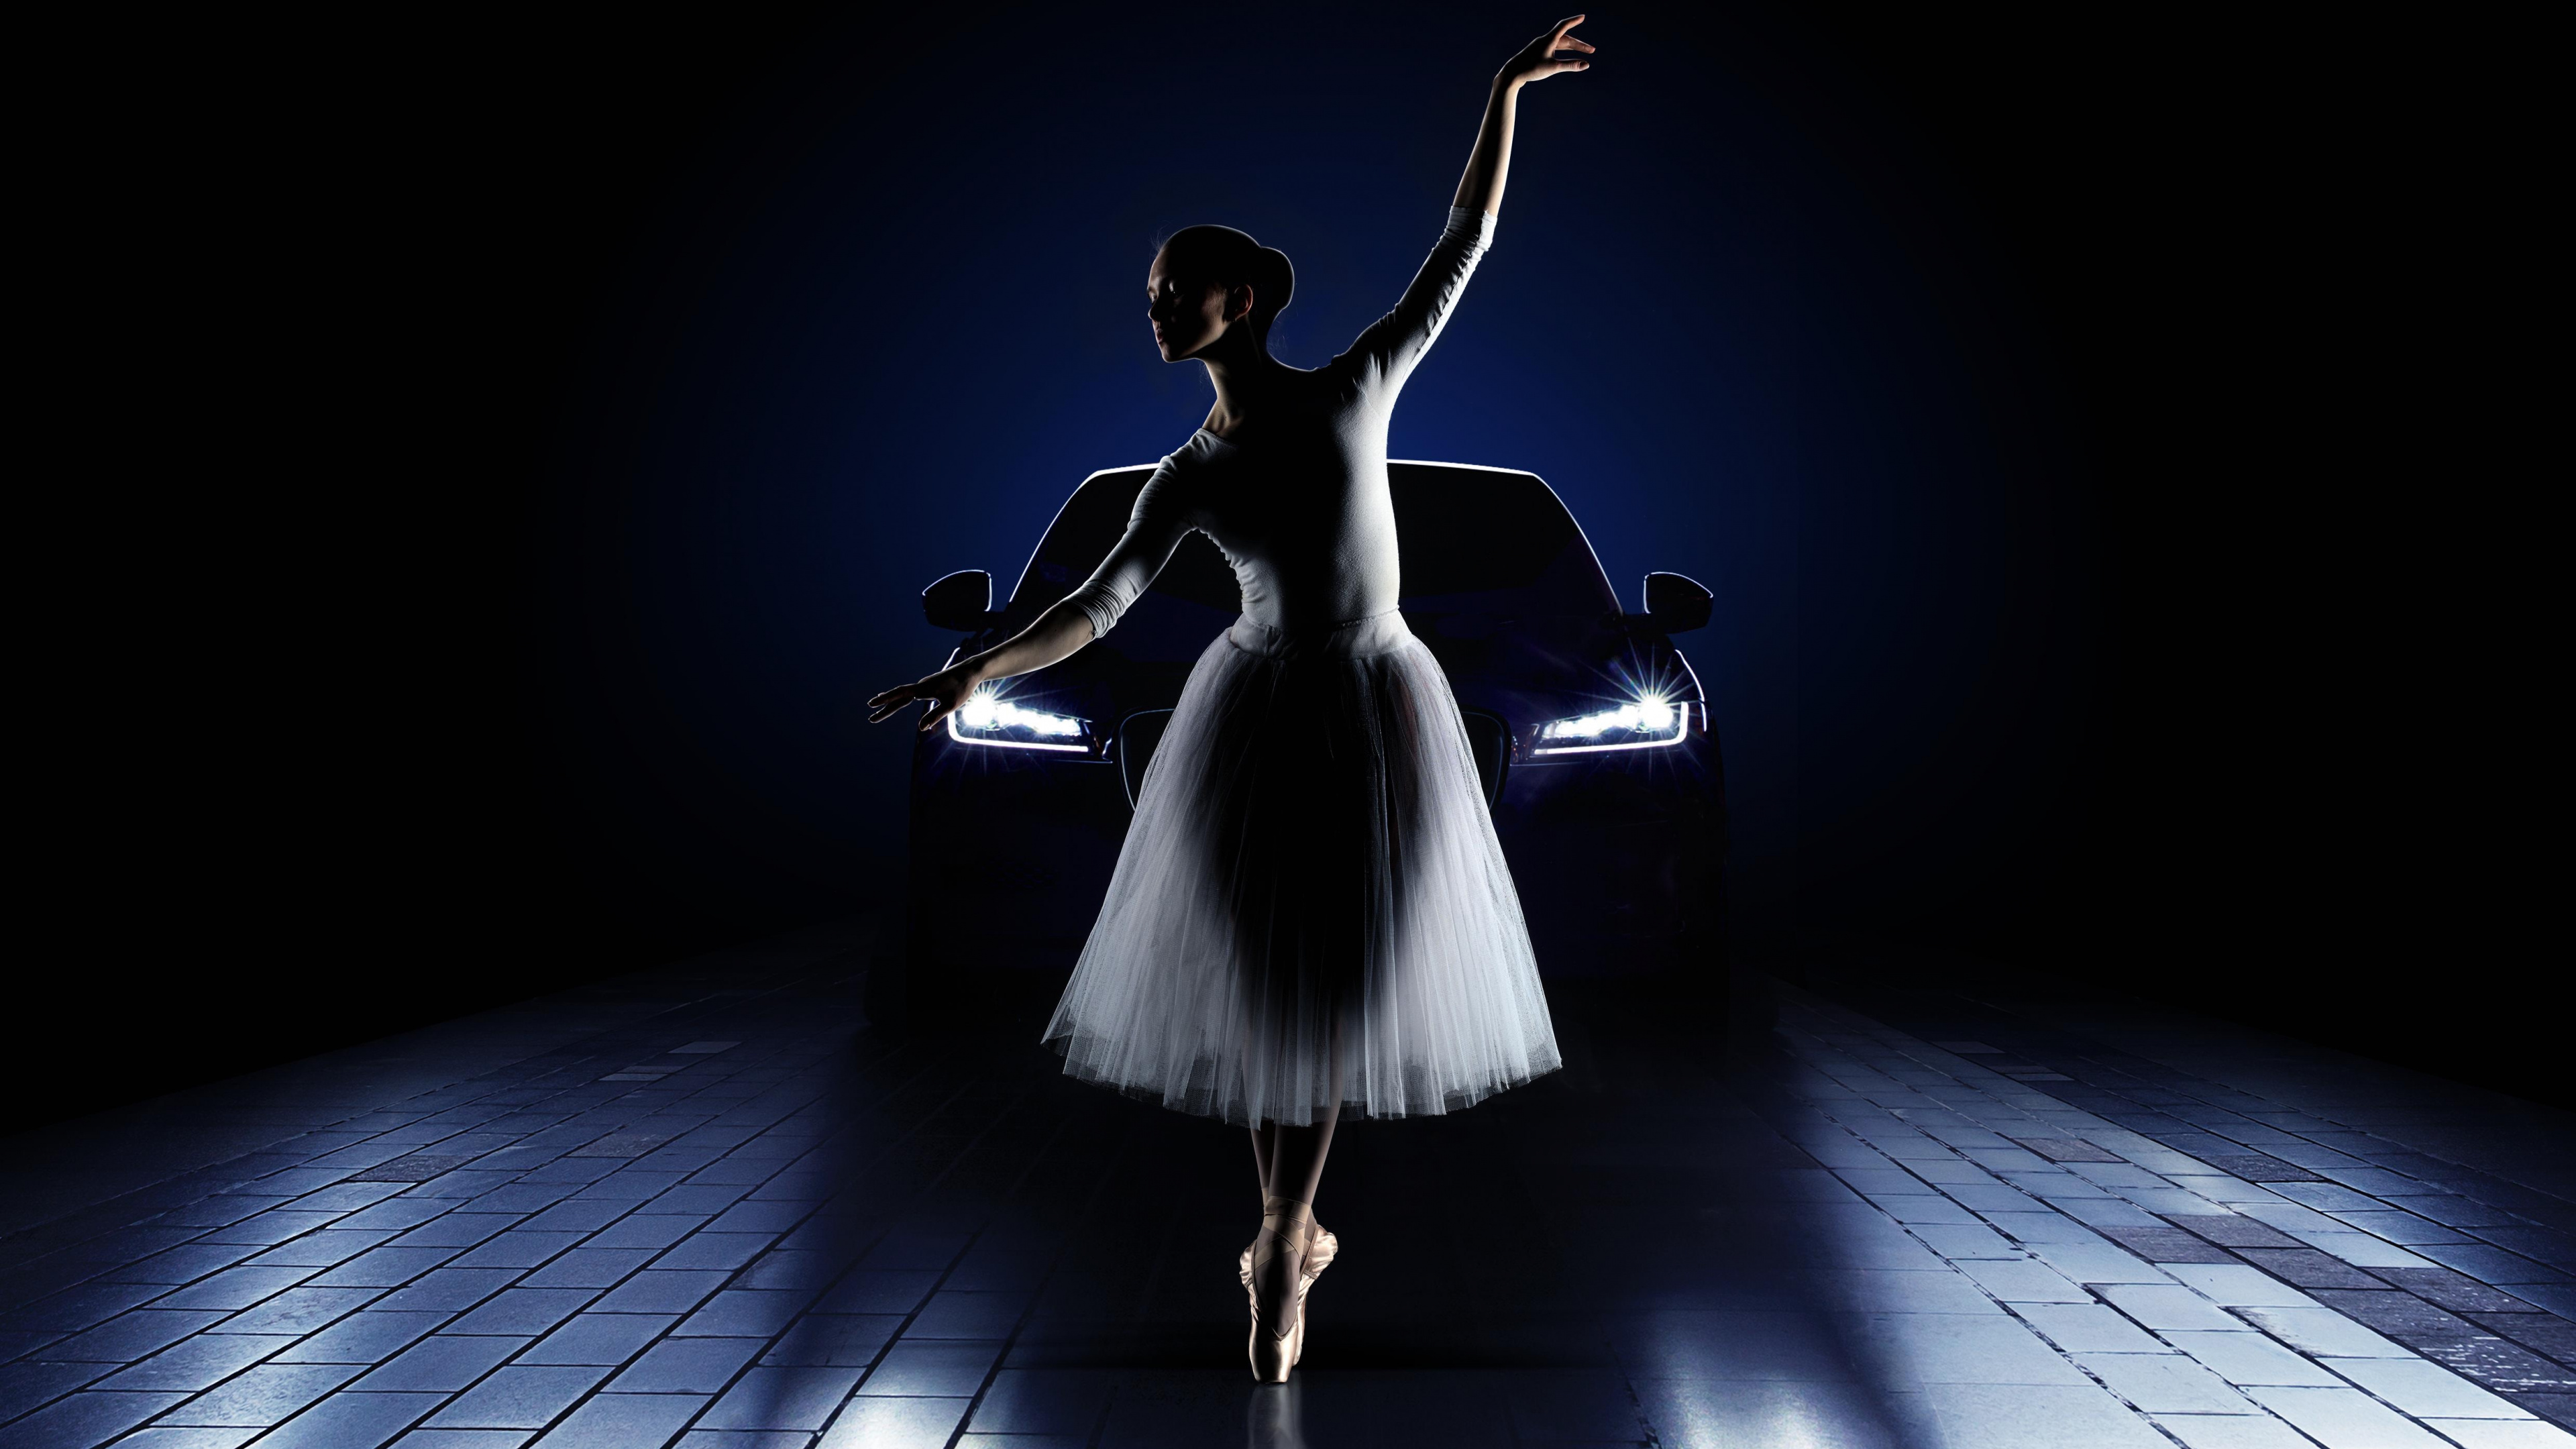 Ballett, Balletttänzer, Licht, Tänzer, Tanz. Wallpaper in 3840x2160 Resolution